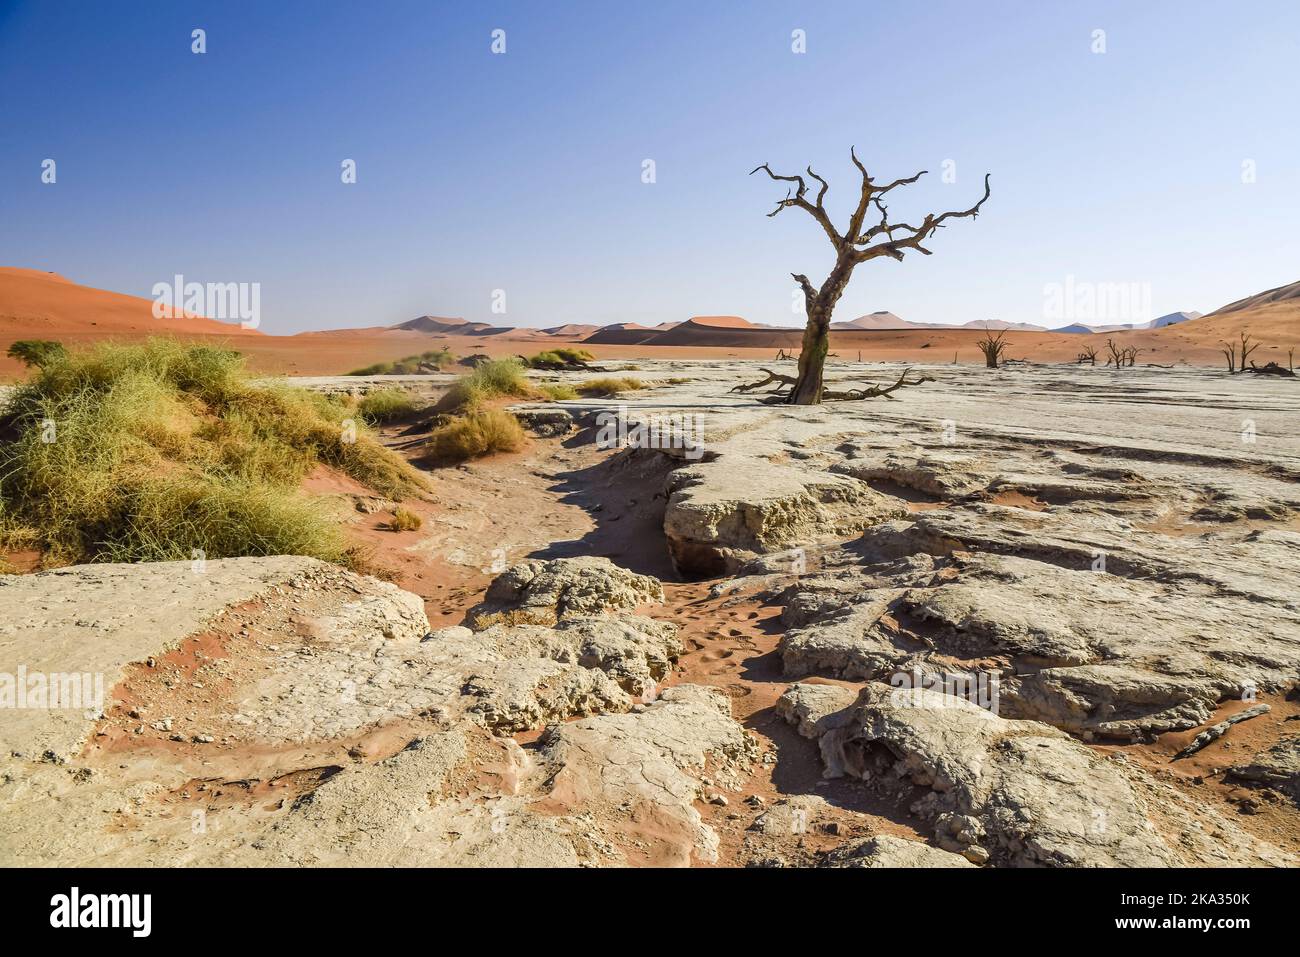 Kameldornbäume in Deadvlei, Sossusvlei, Namibia. Sie wurden gebildet, als das Gebiet überflutete, sodass die Bäume wachsen konnten, aber Sanddünen blockierten den Fluss und schnitten alles Wasser ab. Die Bäume starben vor etwa 700 Jahren, und aufgrund der intensiven Trockenheit, können nicht verrotten. Stockfoto